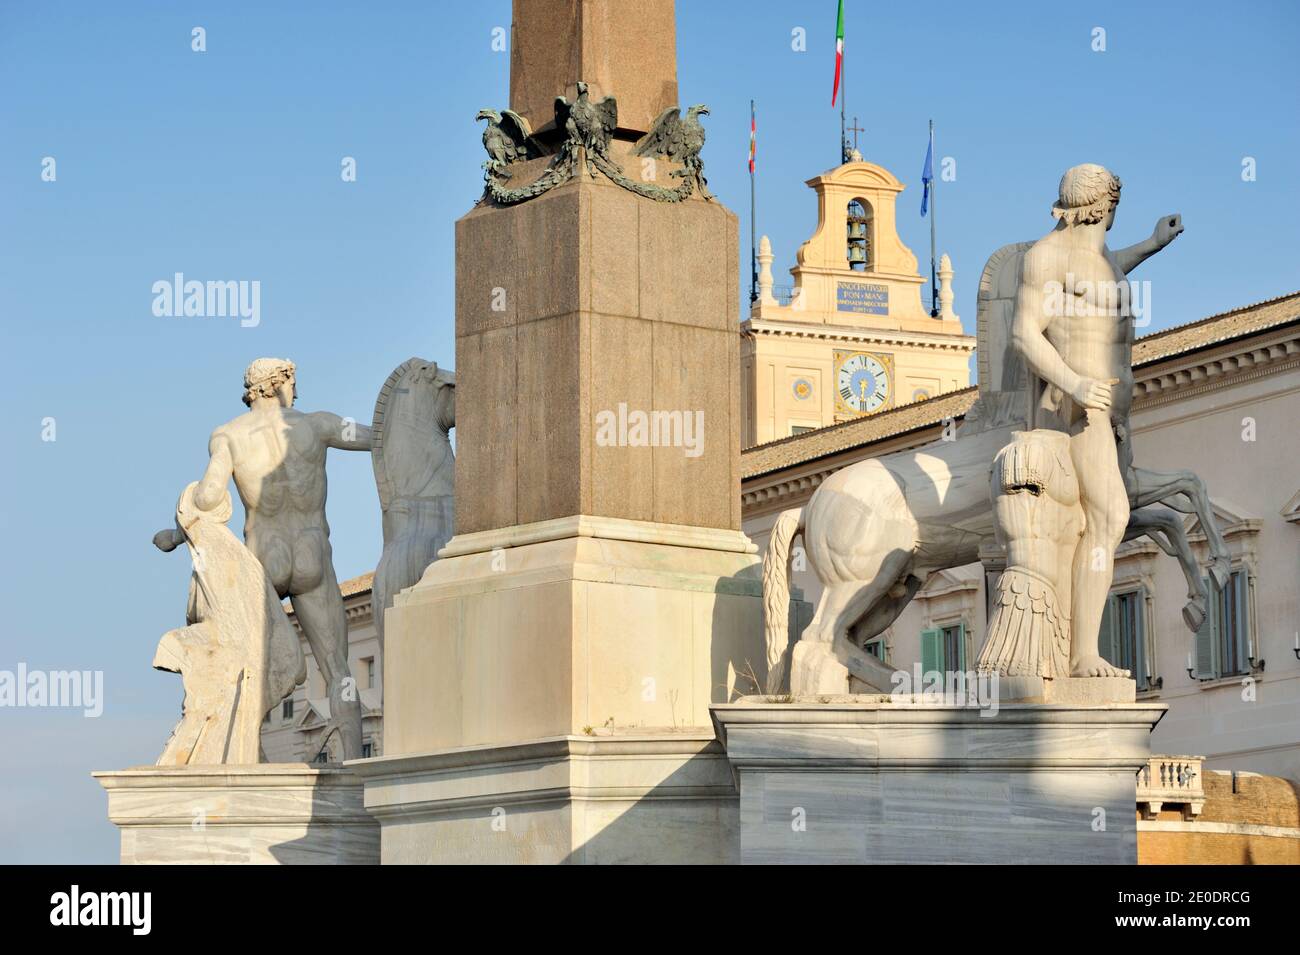 Italie, Rome, fontaine de Monte Cavallo avec les statues de Castor et Pollux et palais Quirinal Banque D'Images